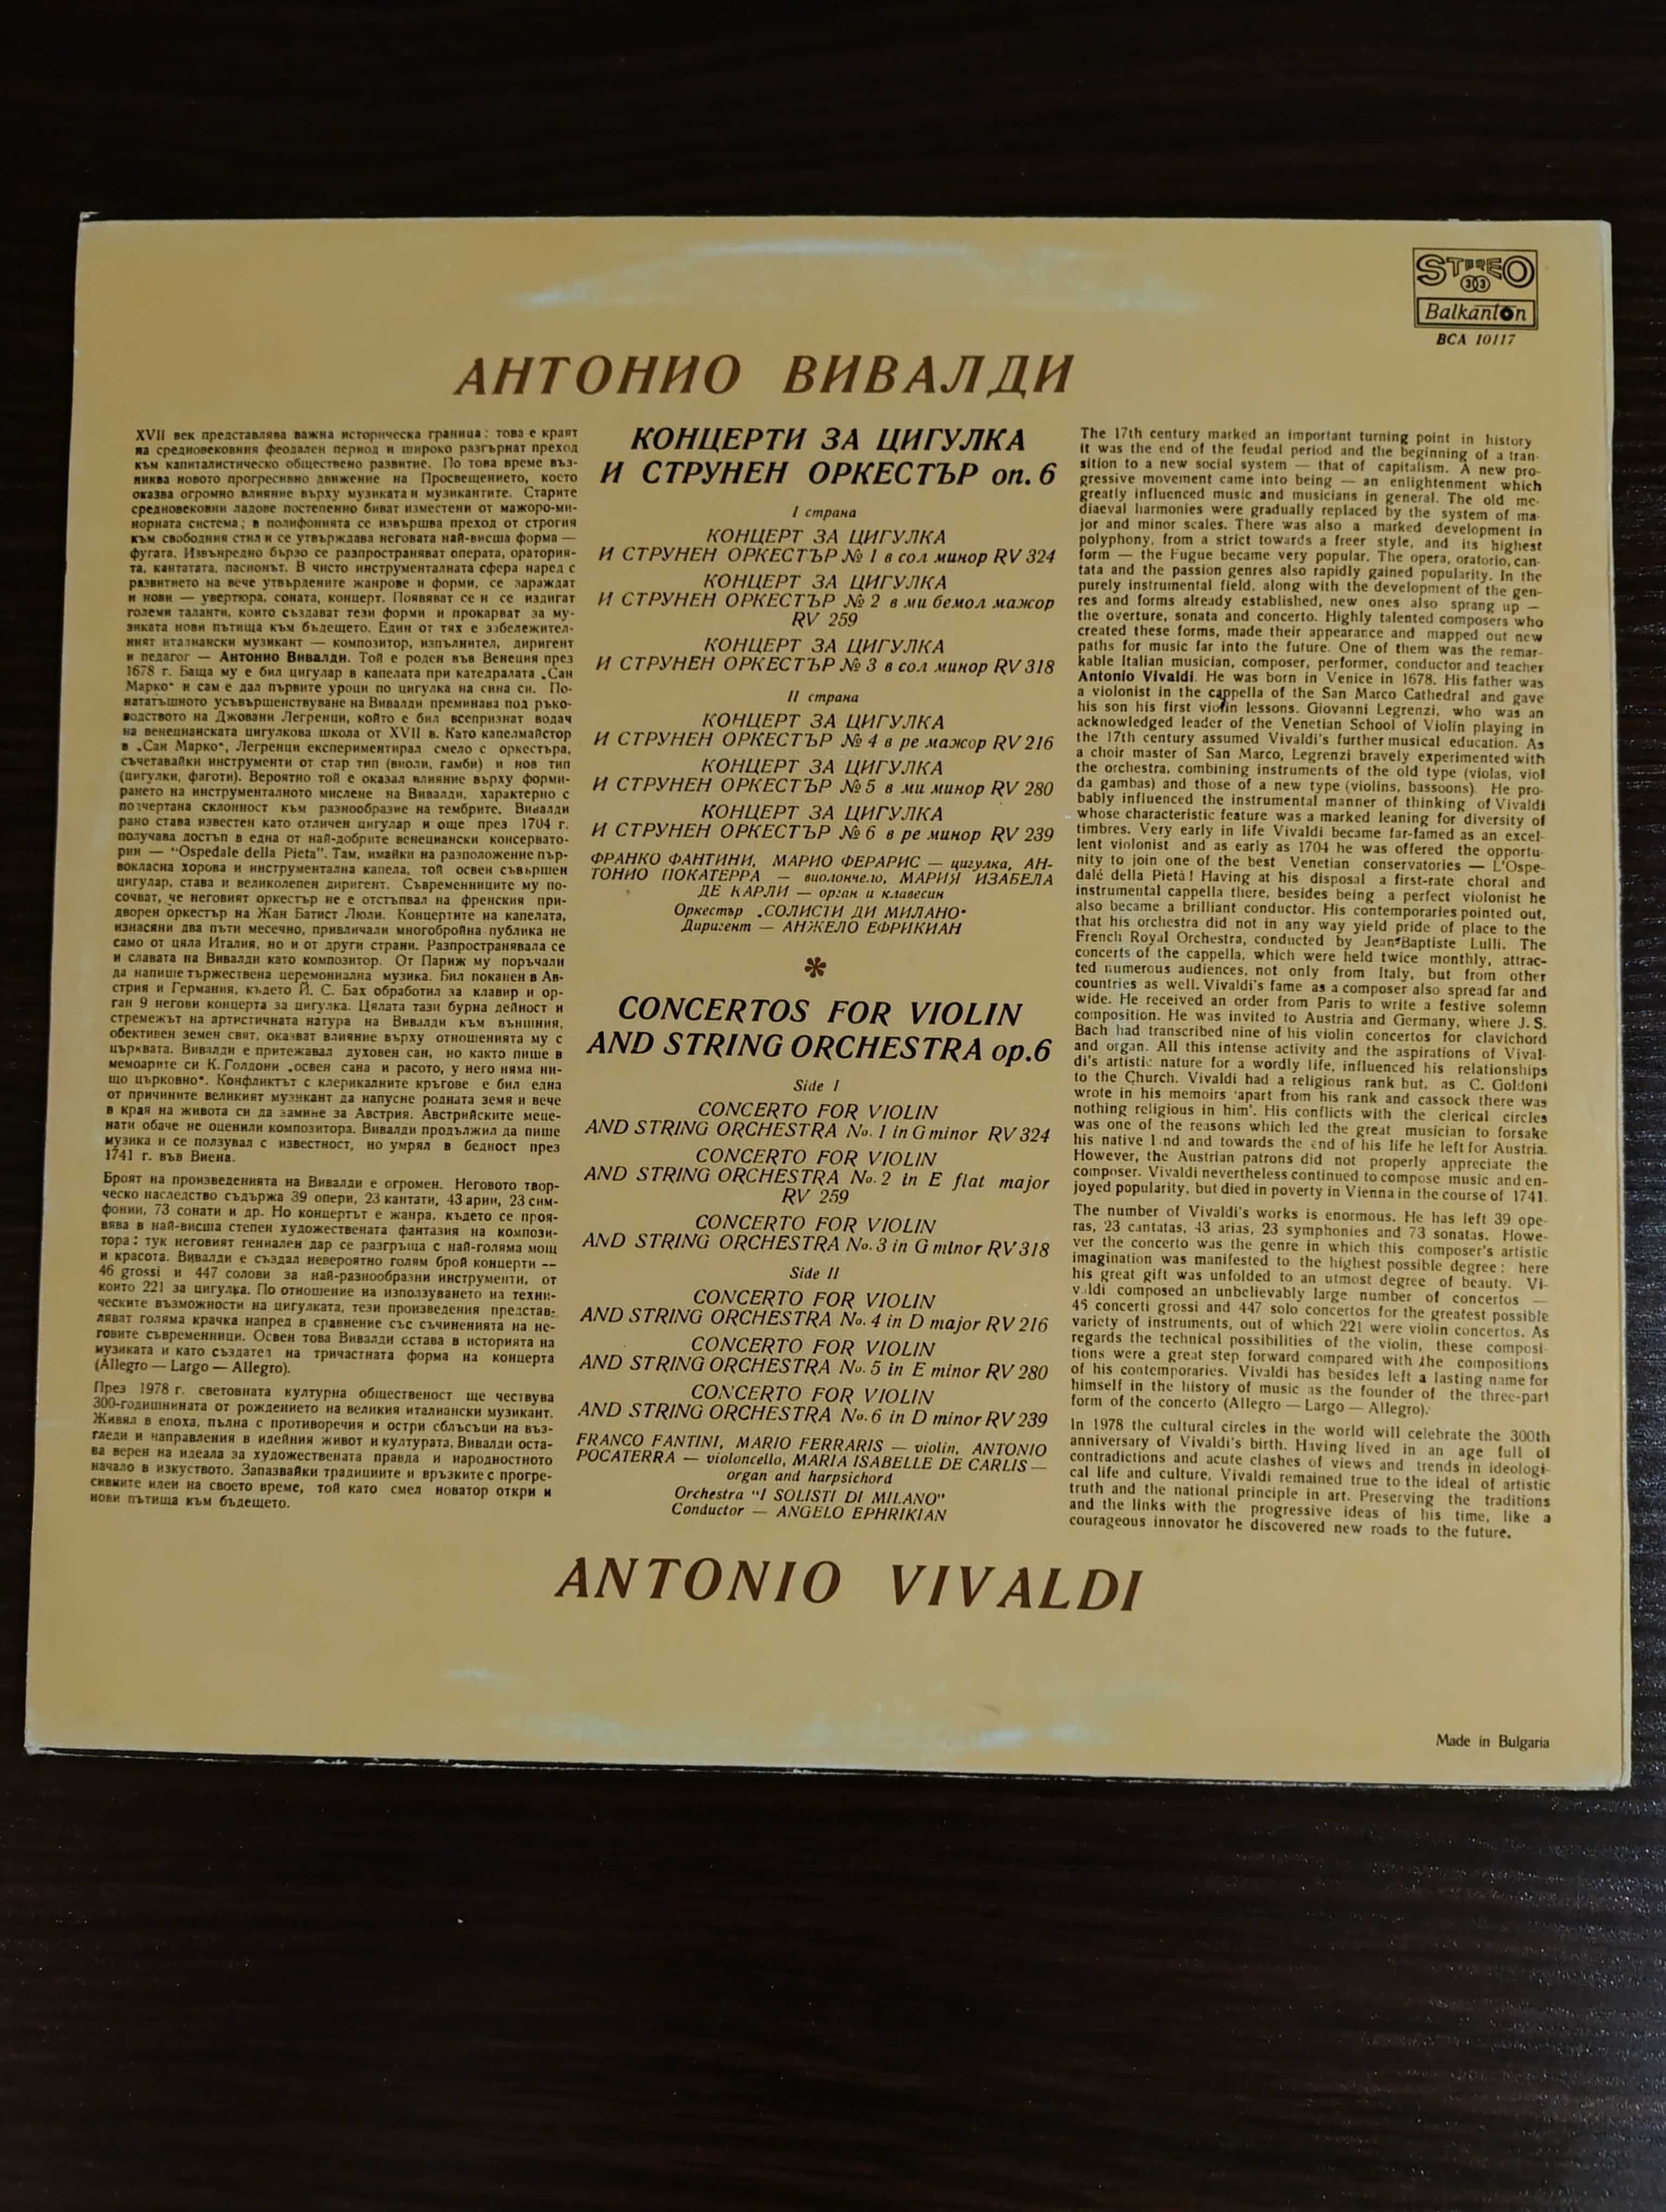 Antonio Vivaldi Winyl